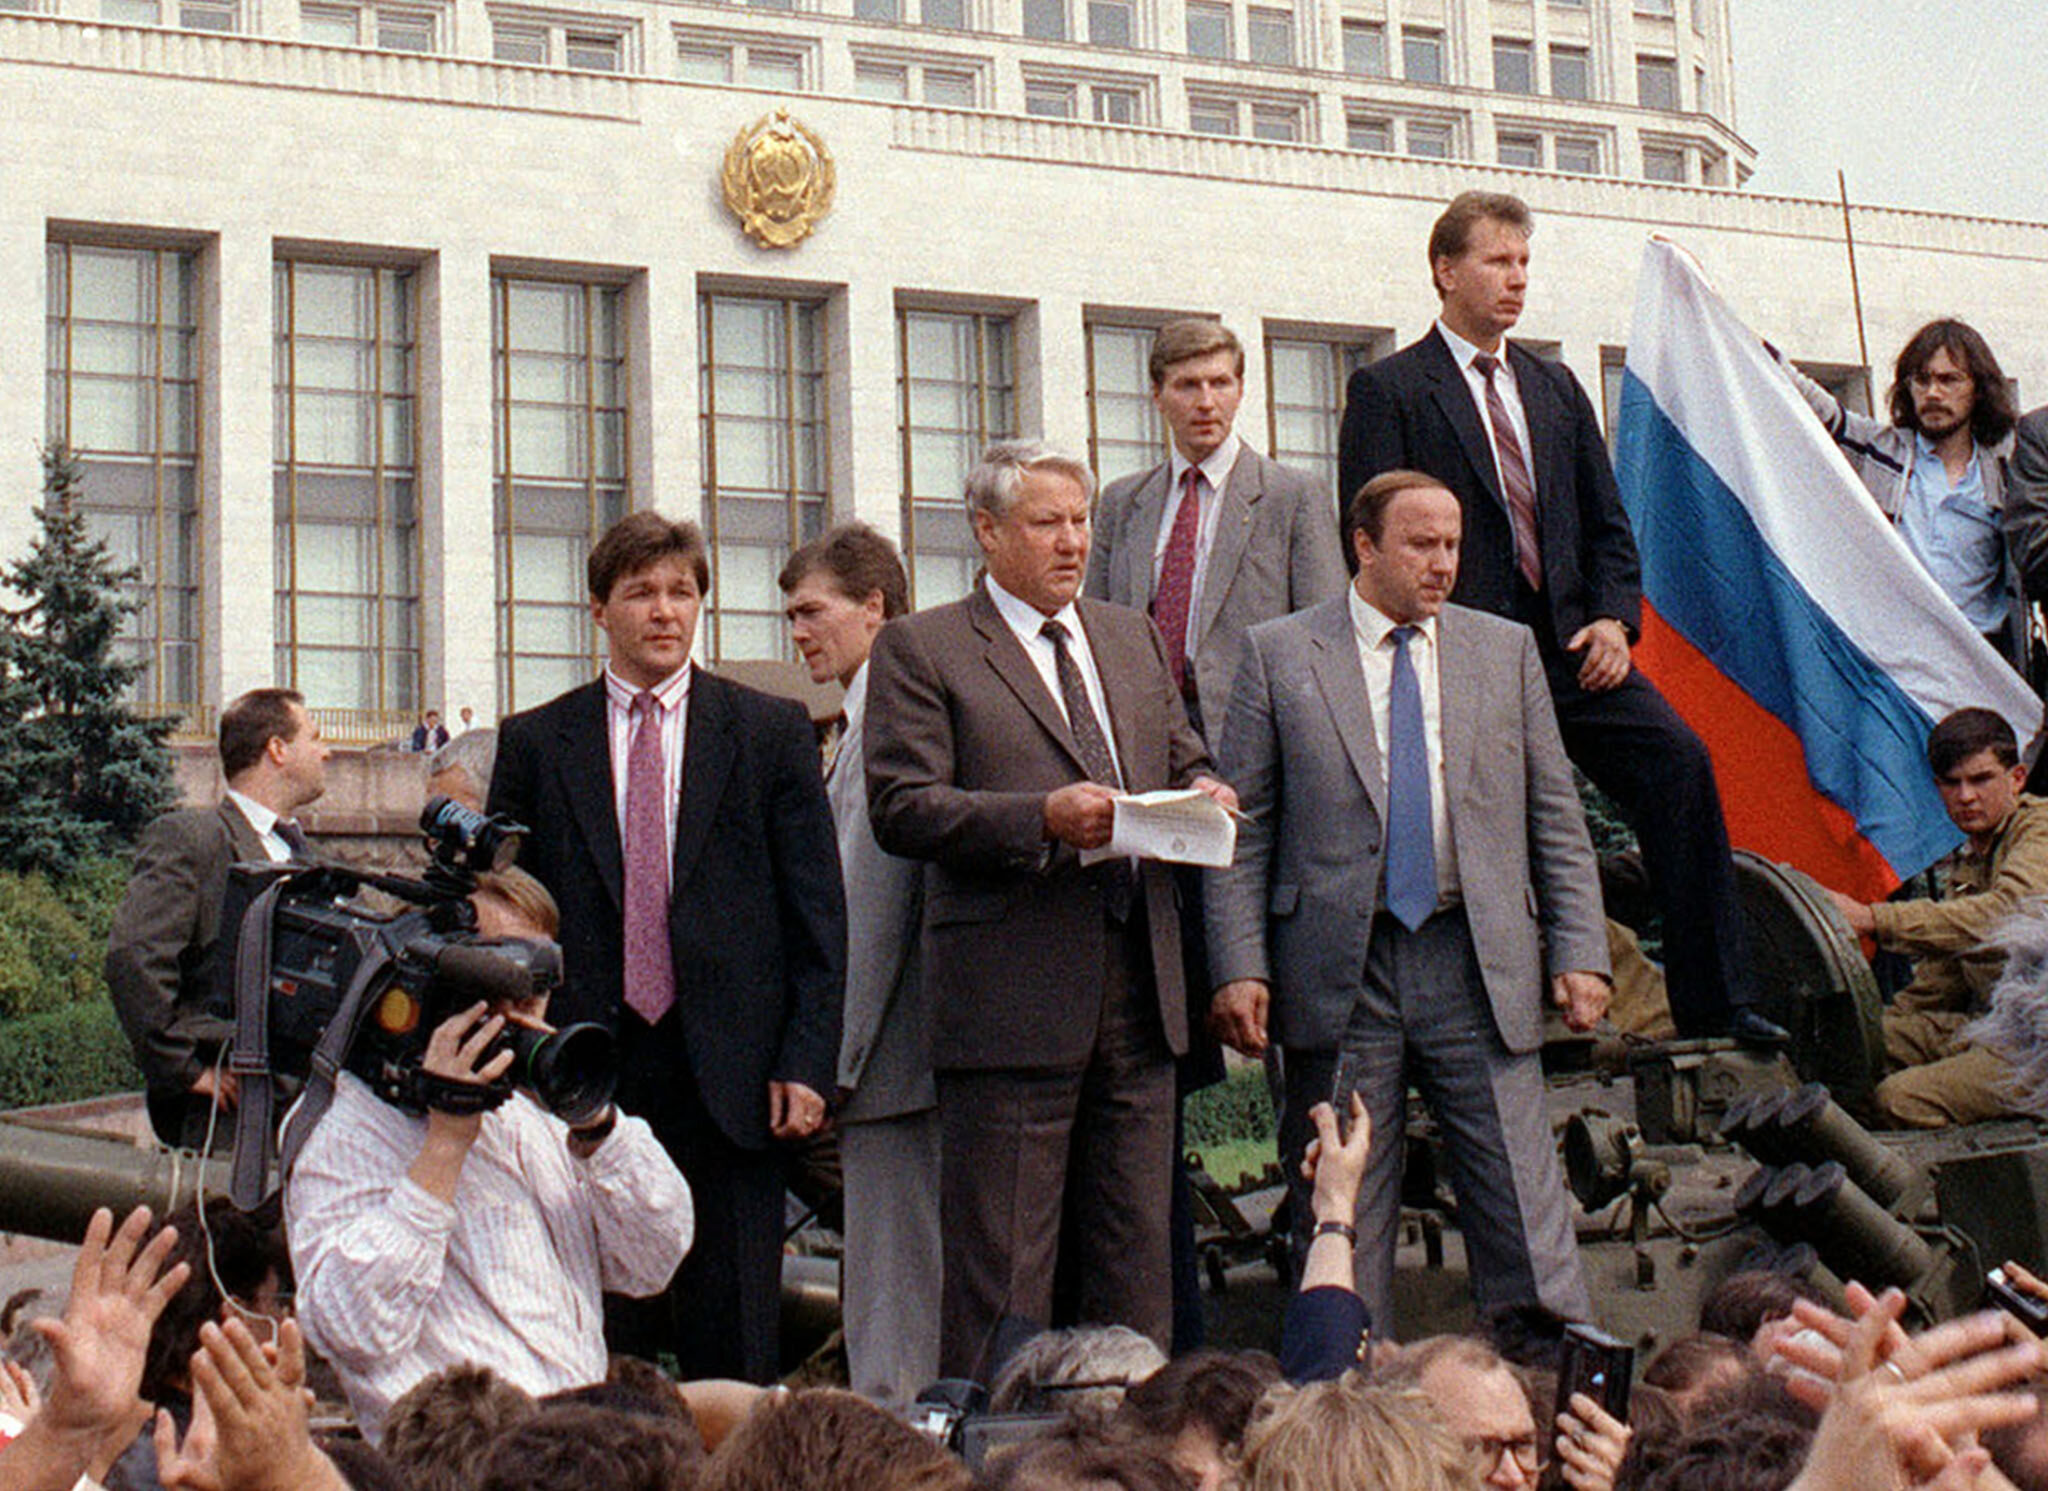 Борис Ельцин (в центре) перед зданием правительства, 19 августа 1991 года. Фото TASS / Scanpix / Leta